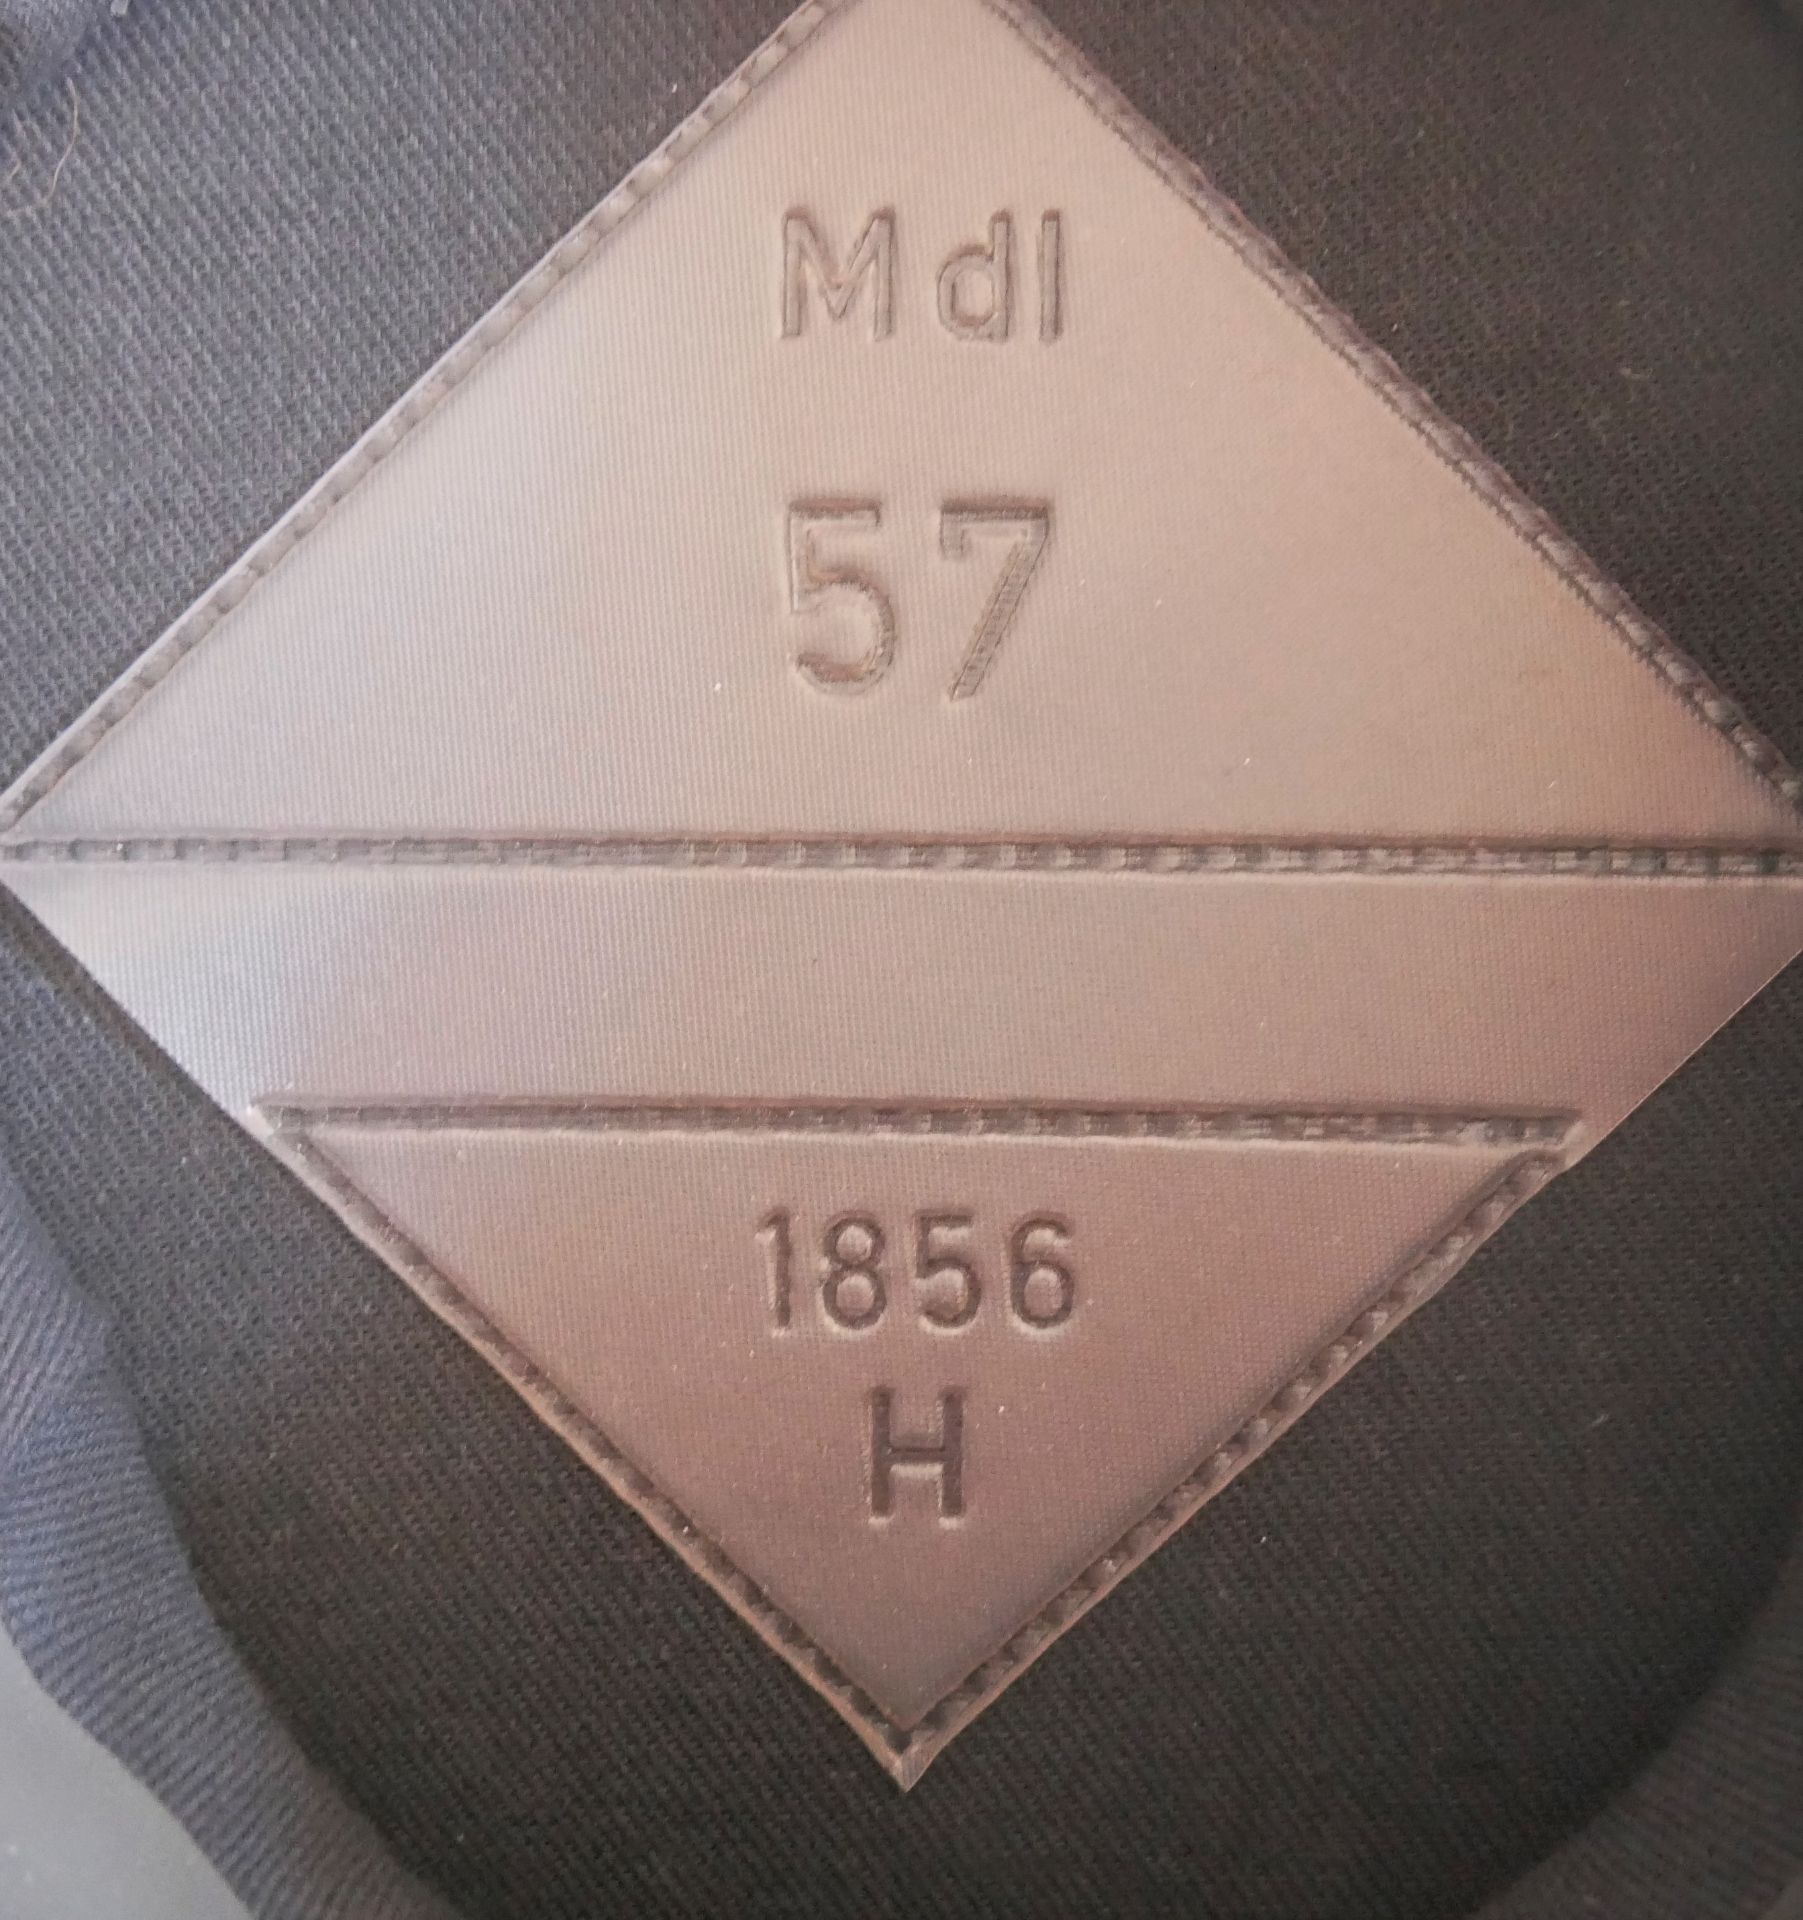 Aus Sammelauflösung! Uniformmütze / Schirmmütze NVA Offizier MdI 1856 H. Größe 57, in blau, guter - Bild 3 aus 3